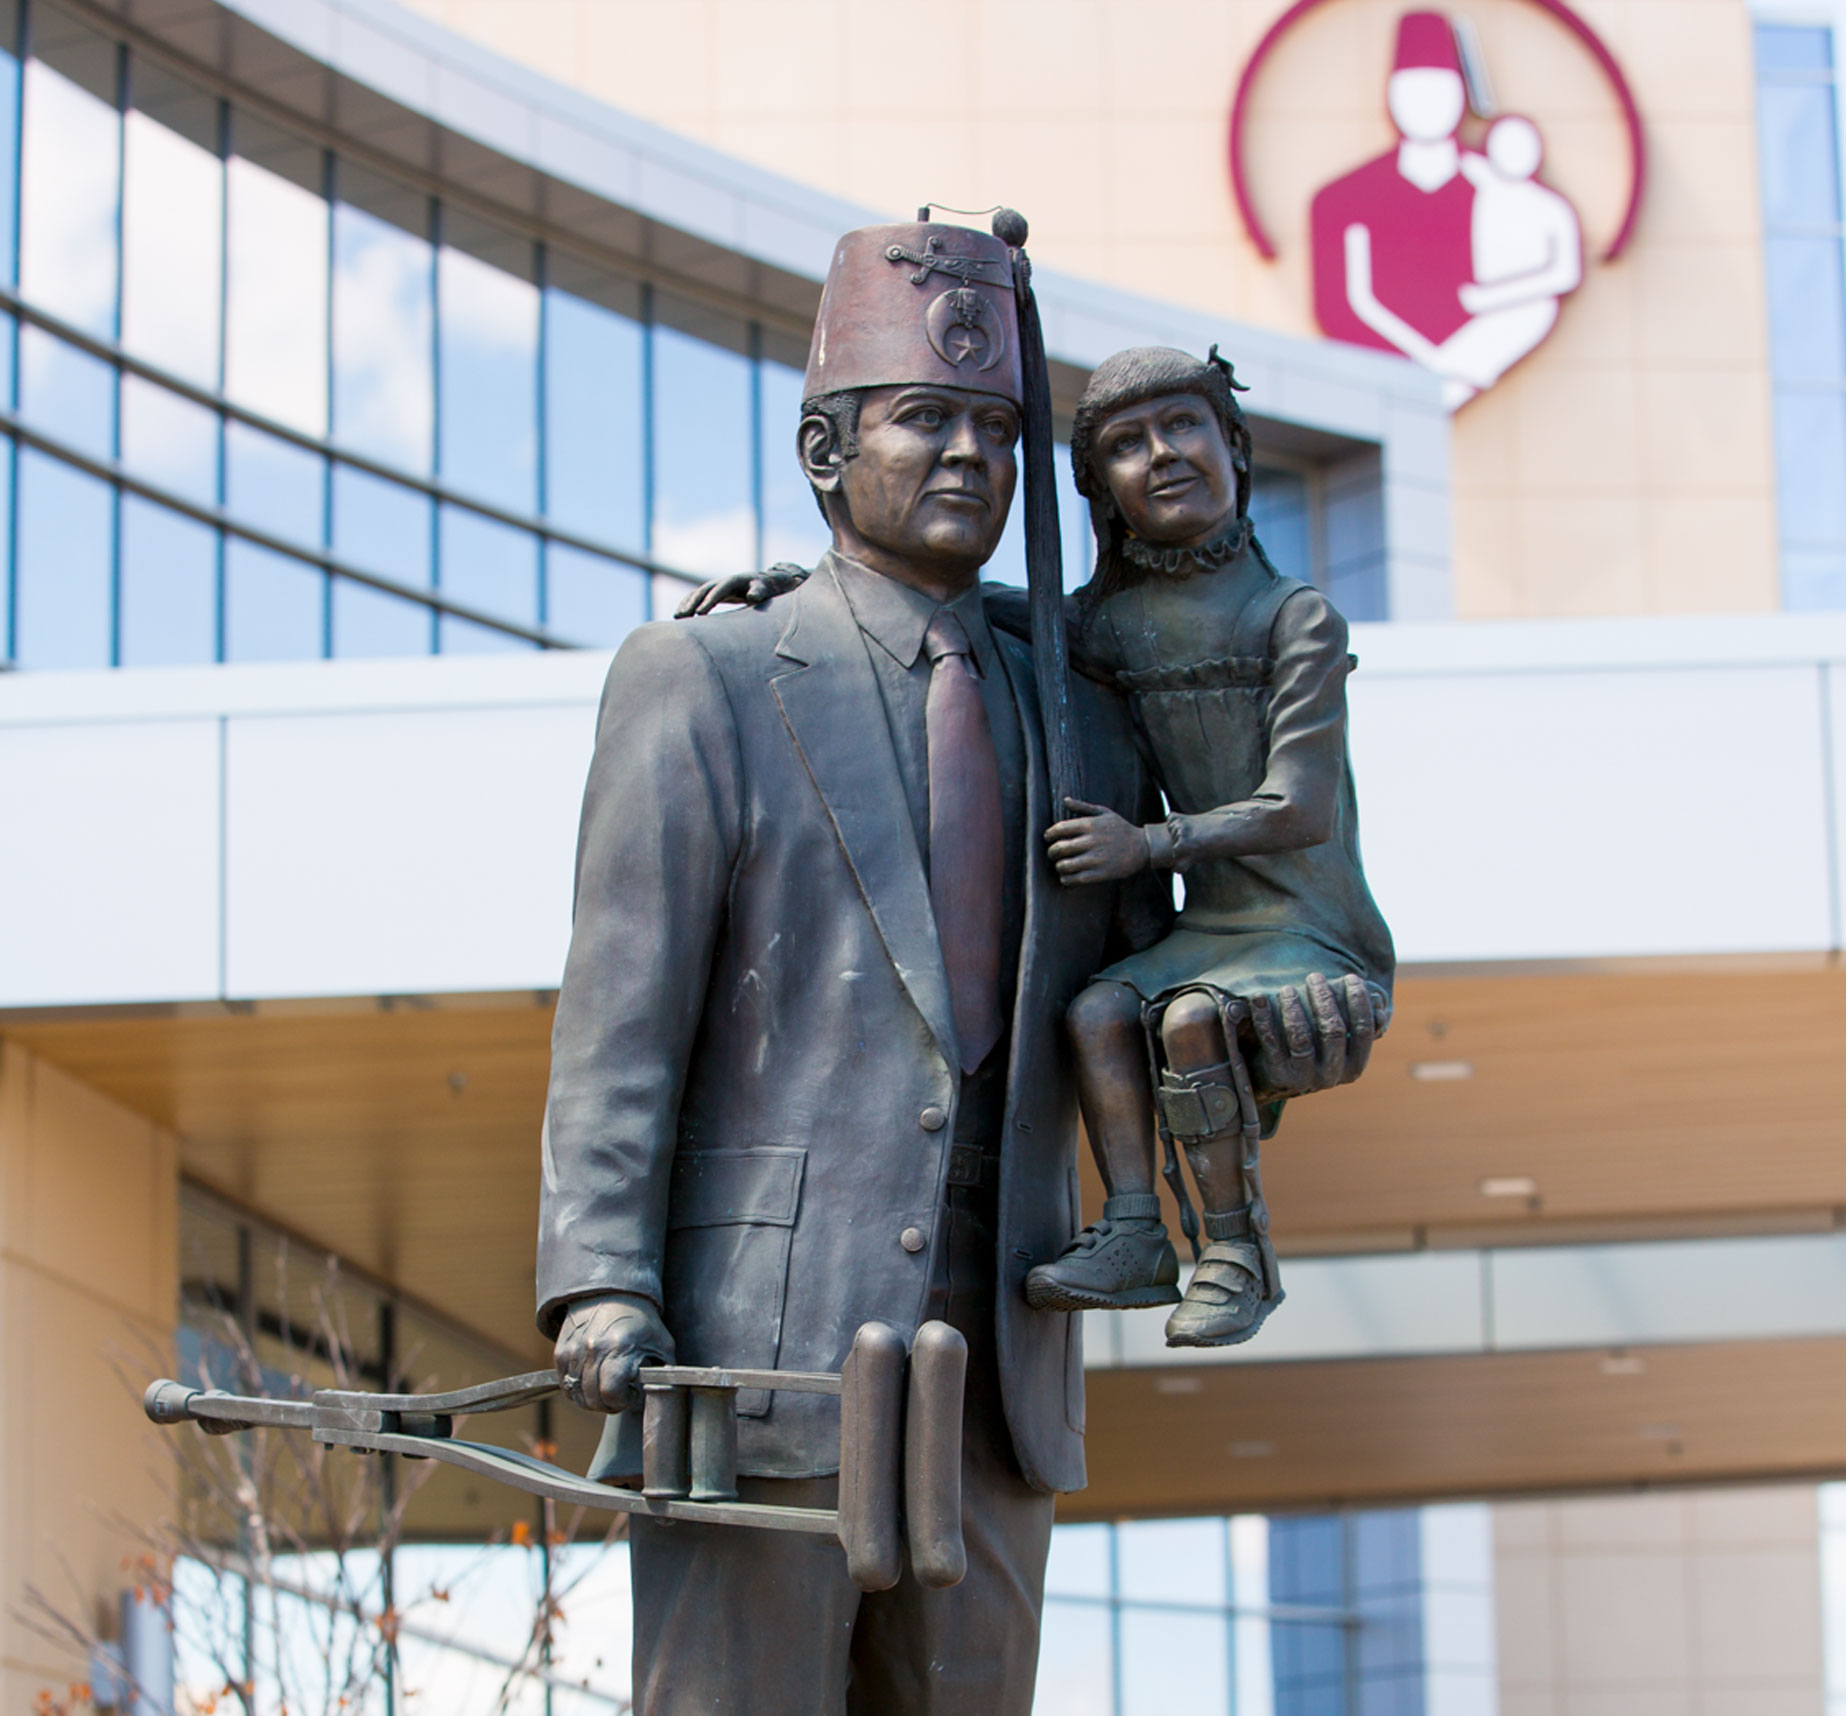 Shriners Hospital for Children statue